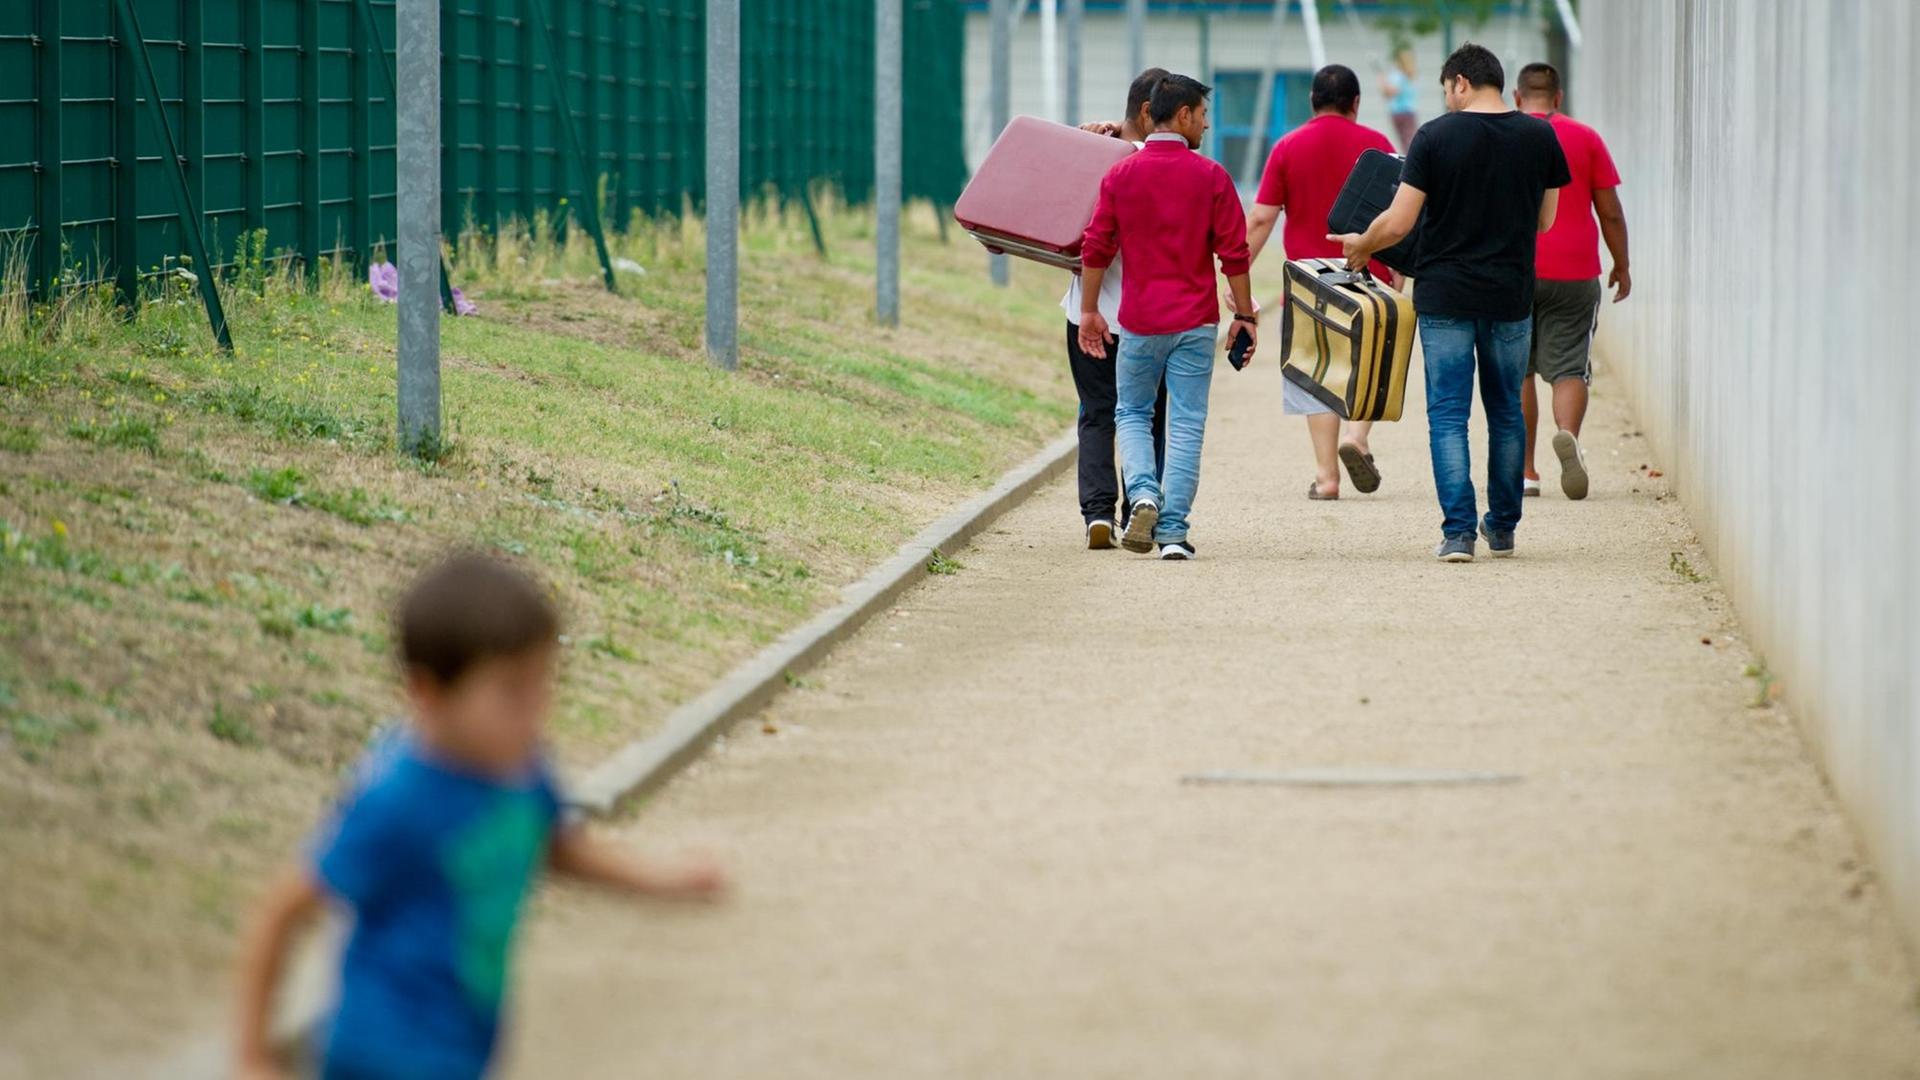 Flüchtlinge laufen am 27.08.2015 mit Koffern bepackt auf einem Weg einer Erstaufnahmeeinrichtung für Flüchtlinge in Ingelheim (Rheinland-Pfalz) entlang, während ein Kind im Vordergrund vorbeiläuft. 